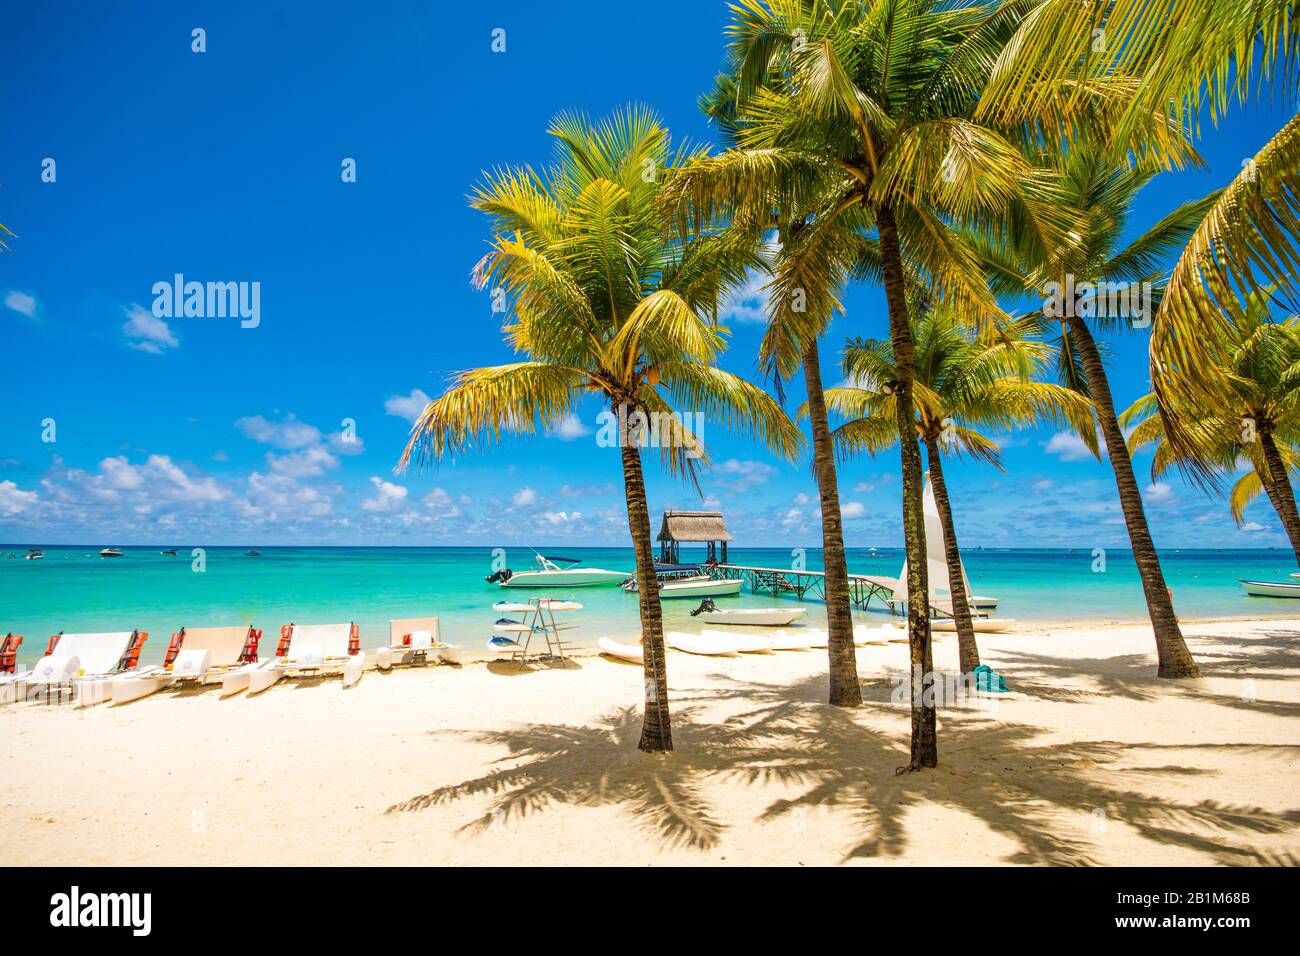 Trou aux biches Mauritius.Spiaggia esotica tropicale con palme e acqua blu chiara. Foto Stock